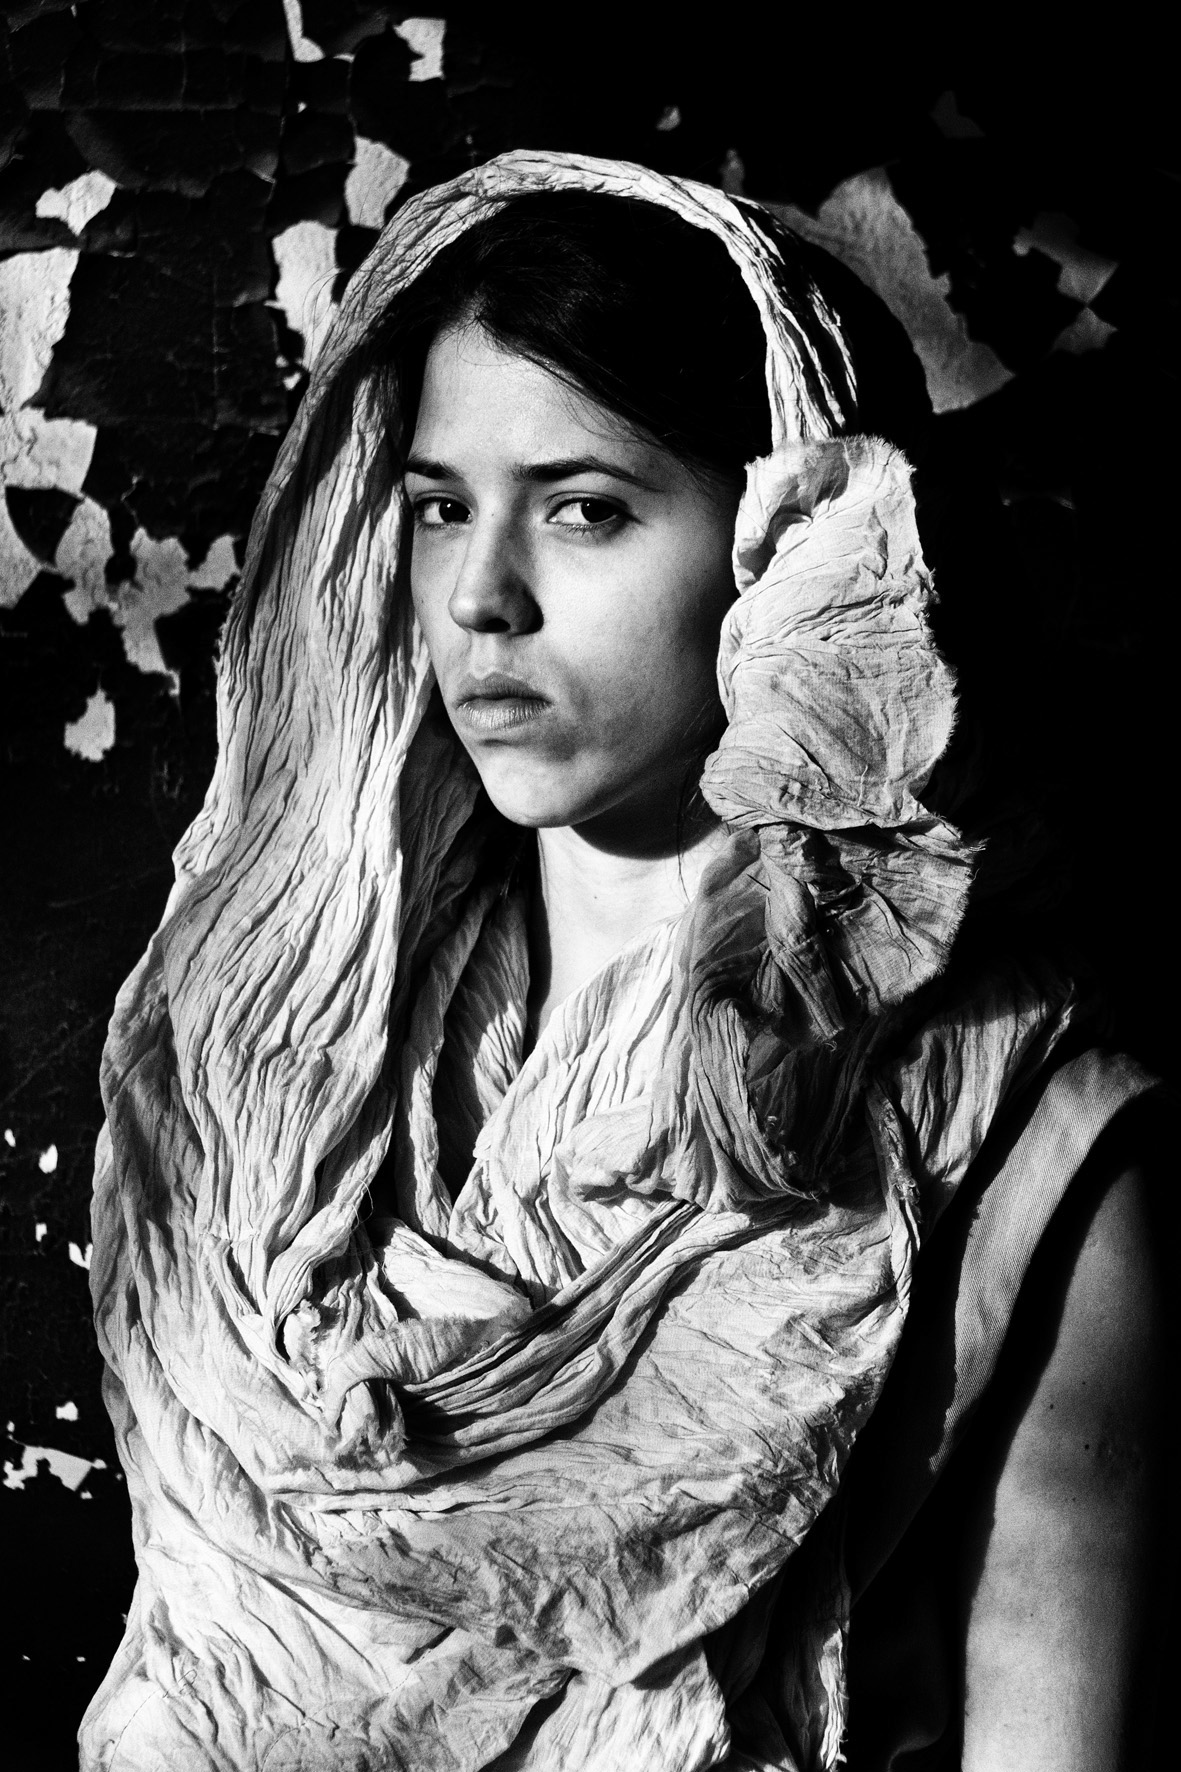 costume dream portrait girl black White black and white gray rose desert Serbia nemanja zivkovic AFGHAN